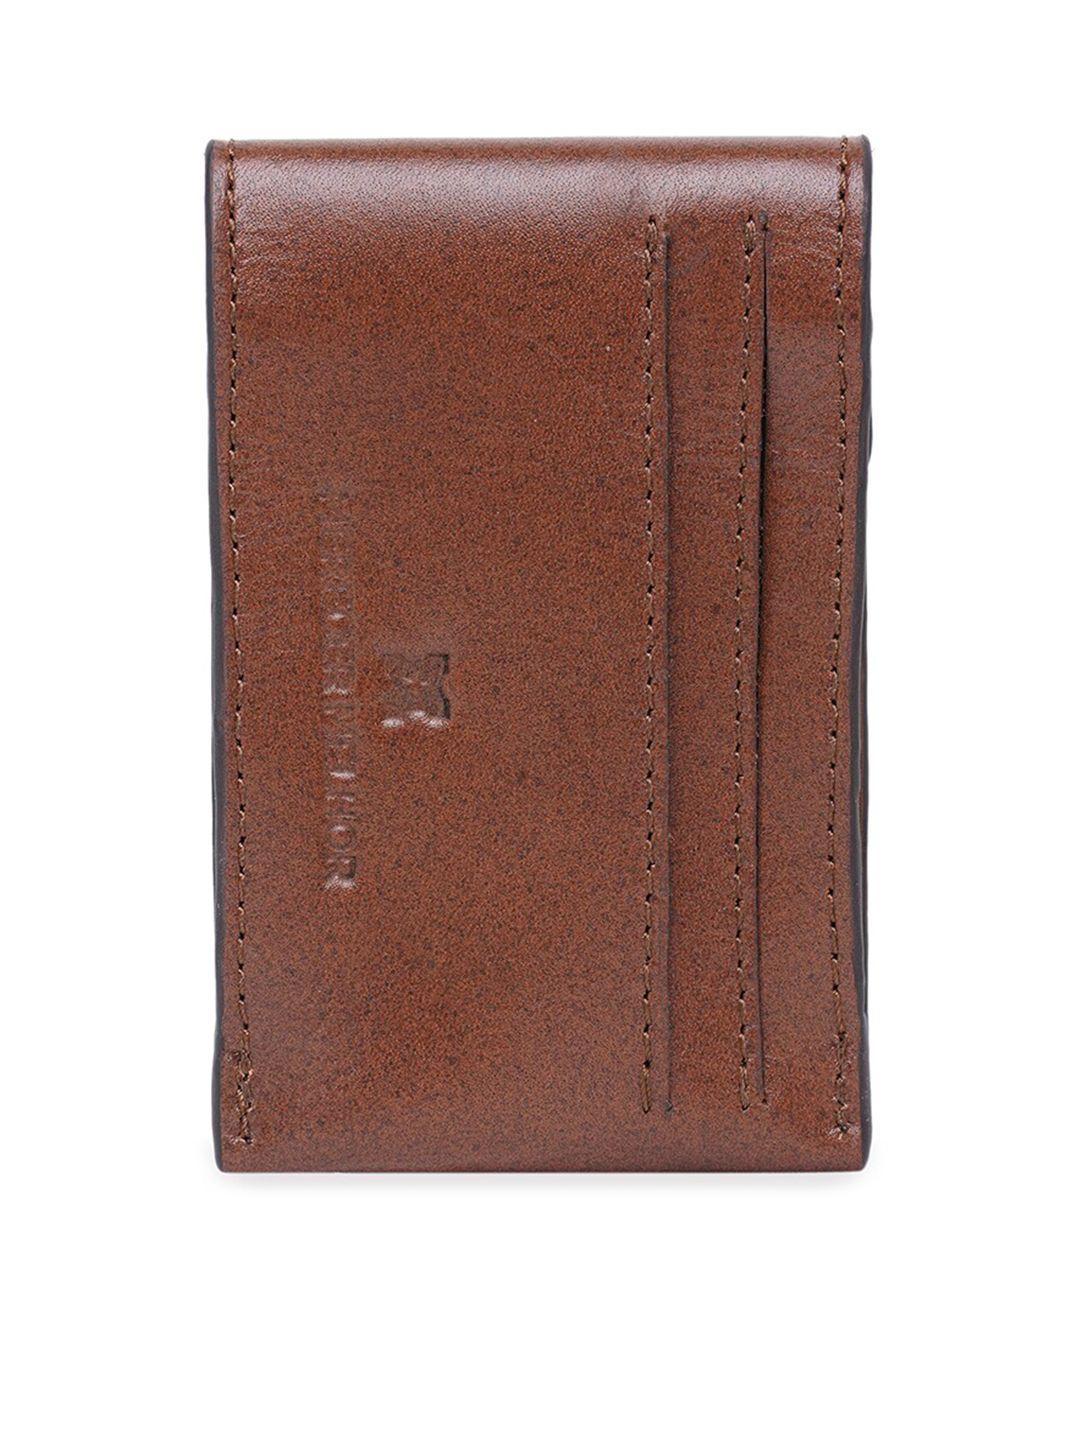 merecer melhor unisex brown solid leather card holder